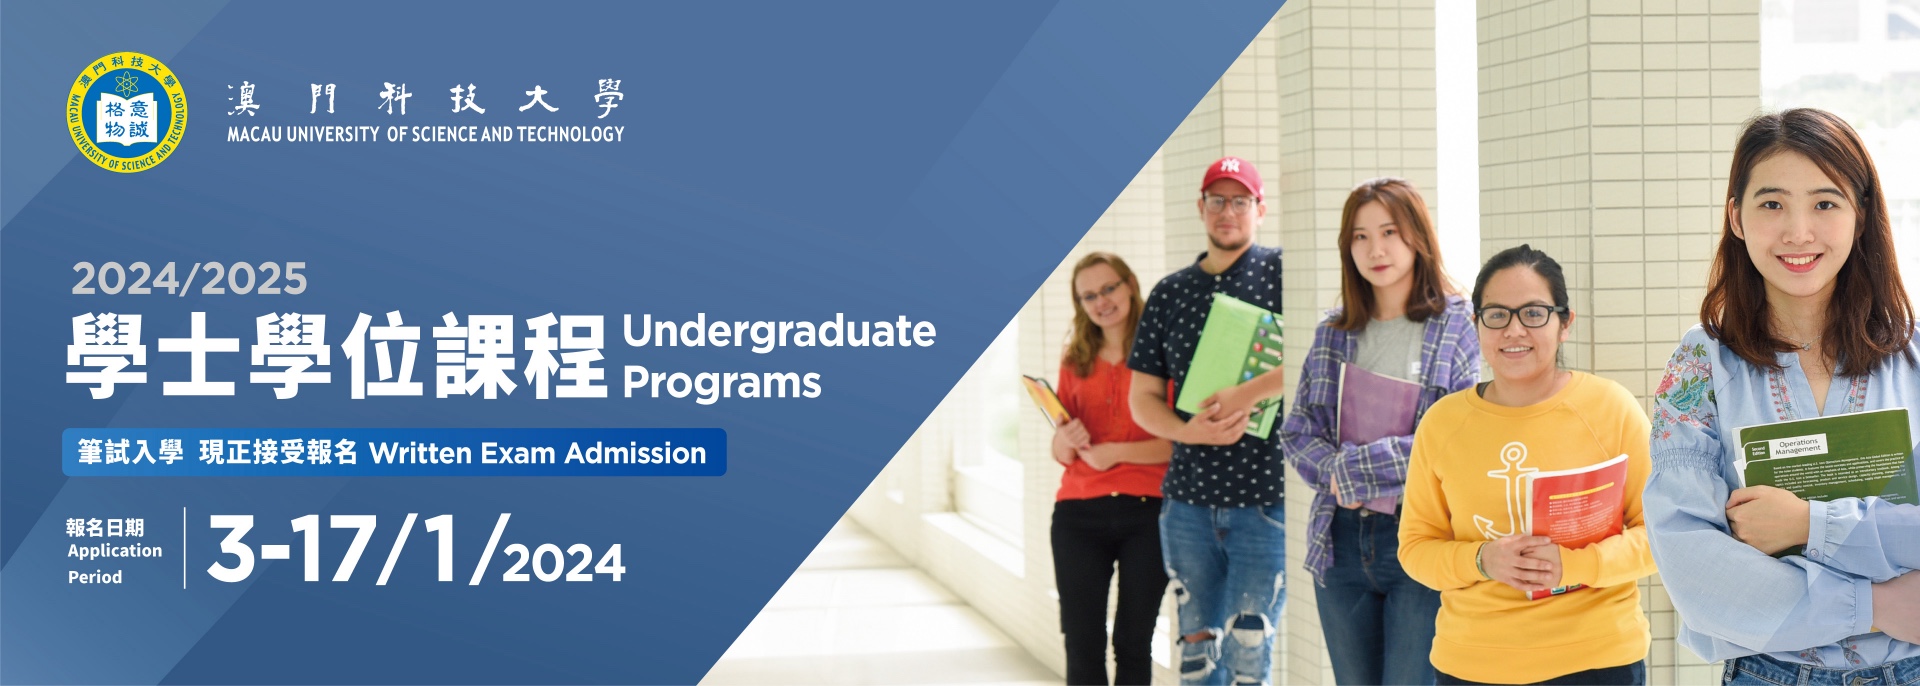 2024/2025 Undergraduate Programs Written Exam Admission